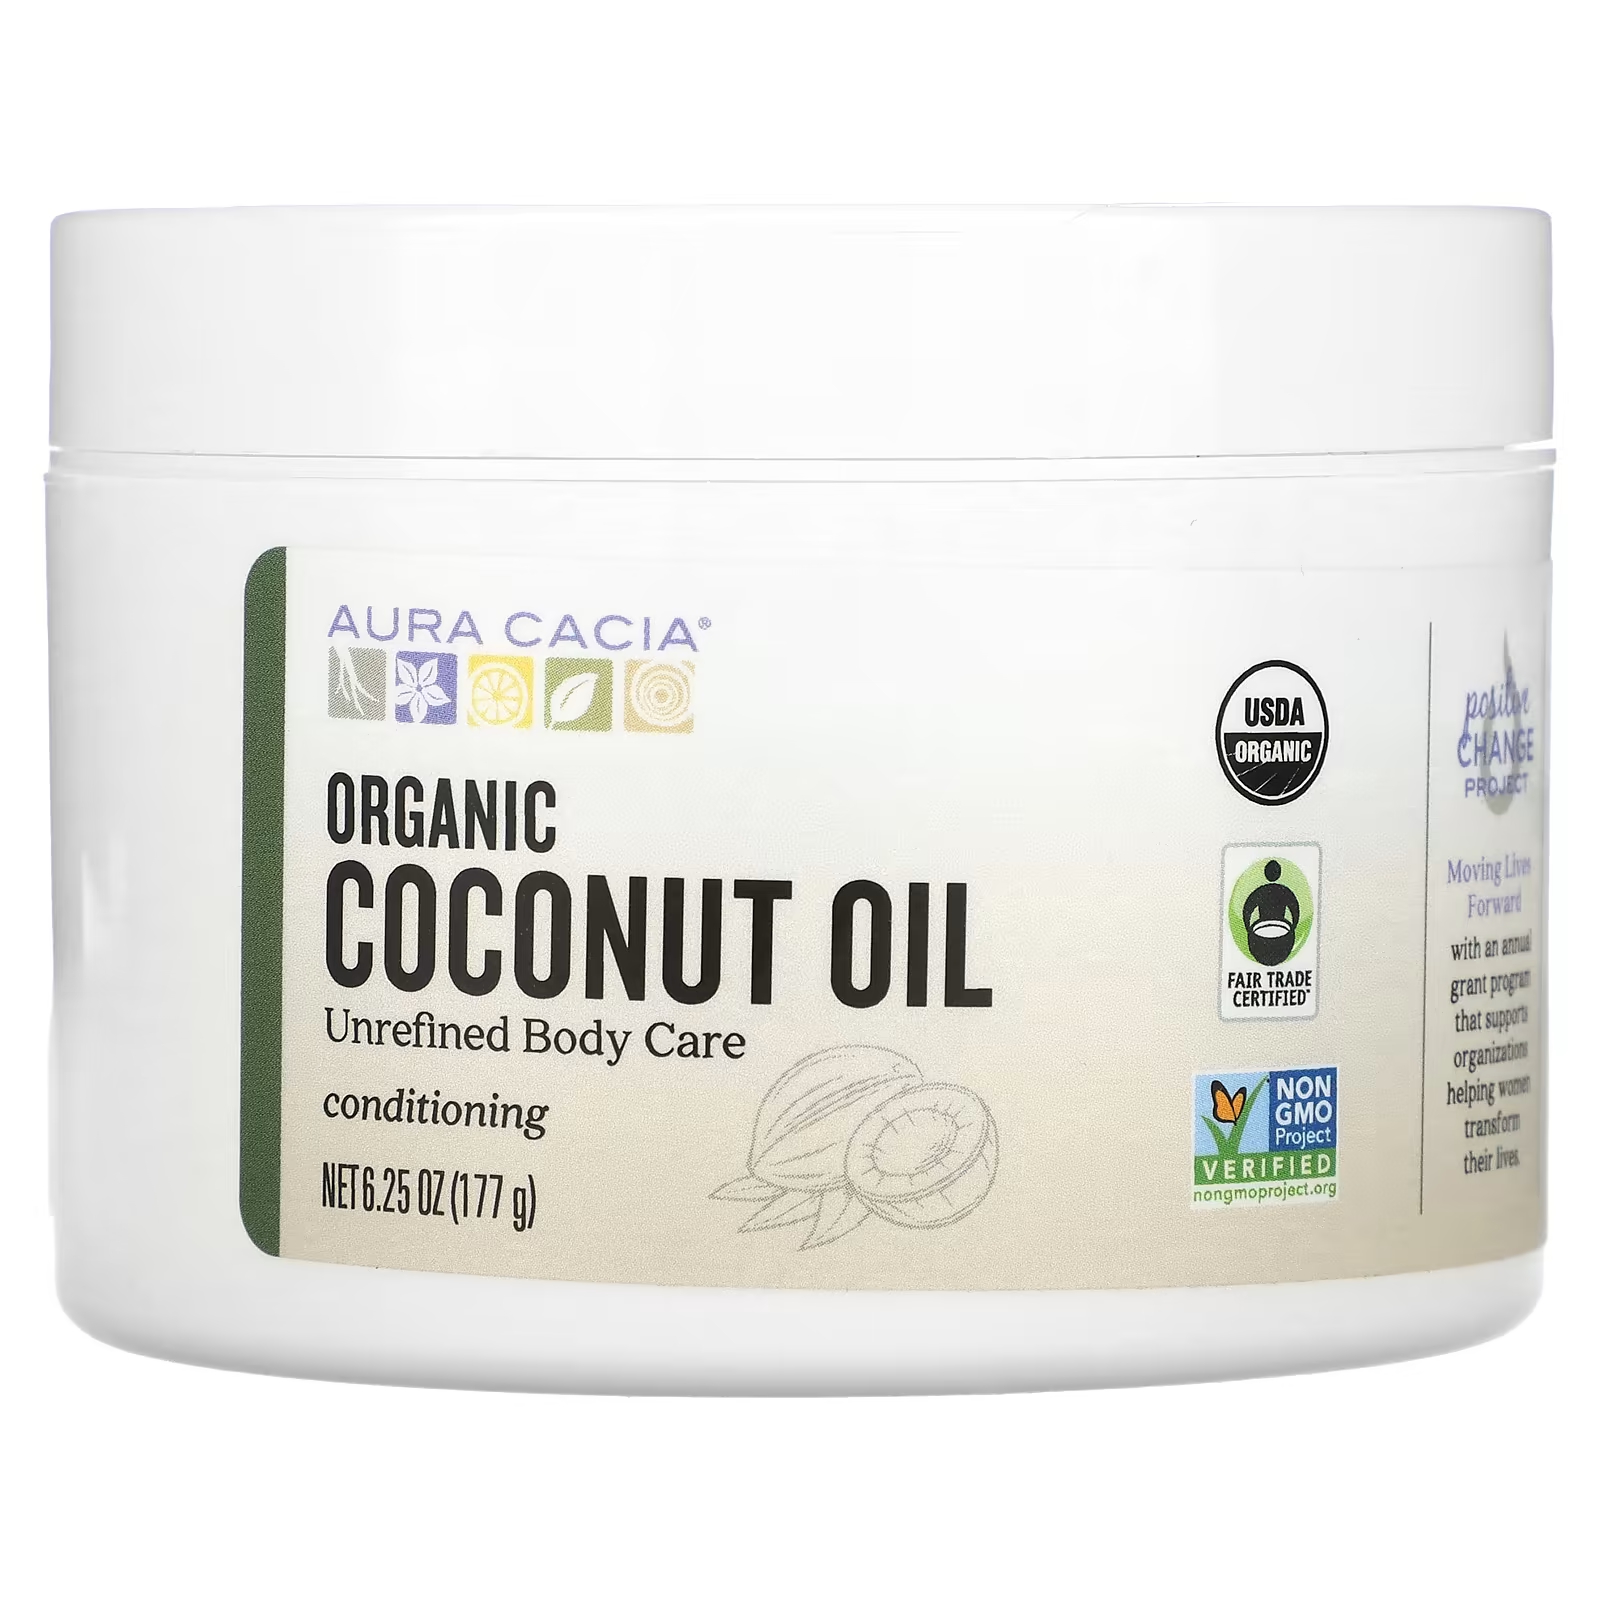 Органическое кокосовое масло Aura Cacia aura cacia органическое масло ши 92 г 3 25 унции